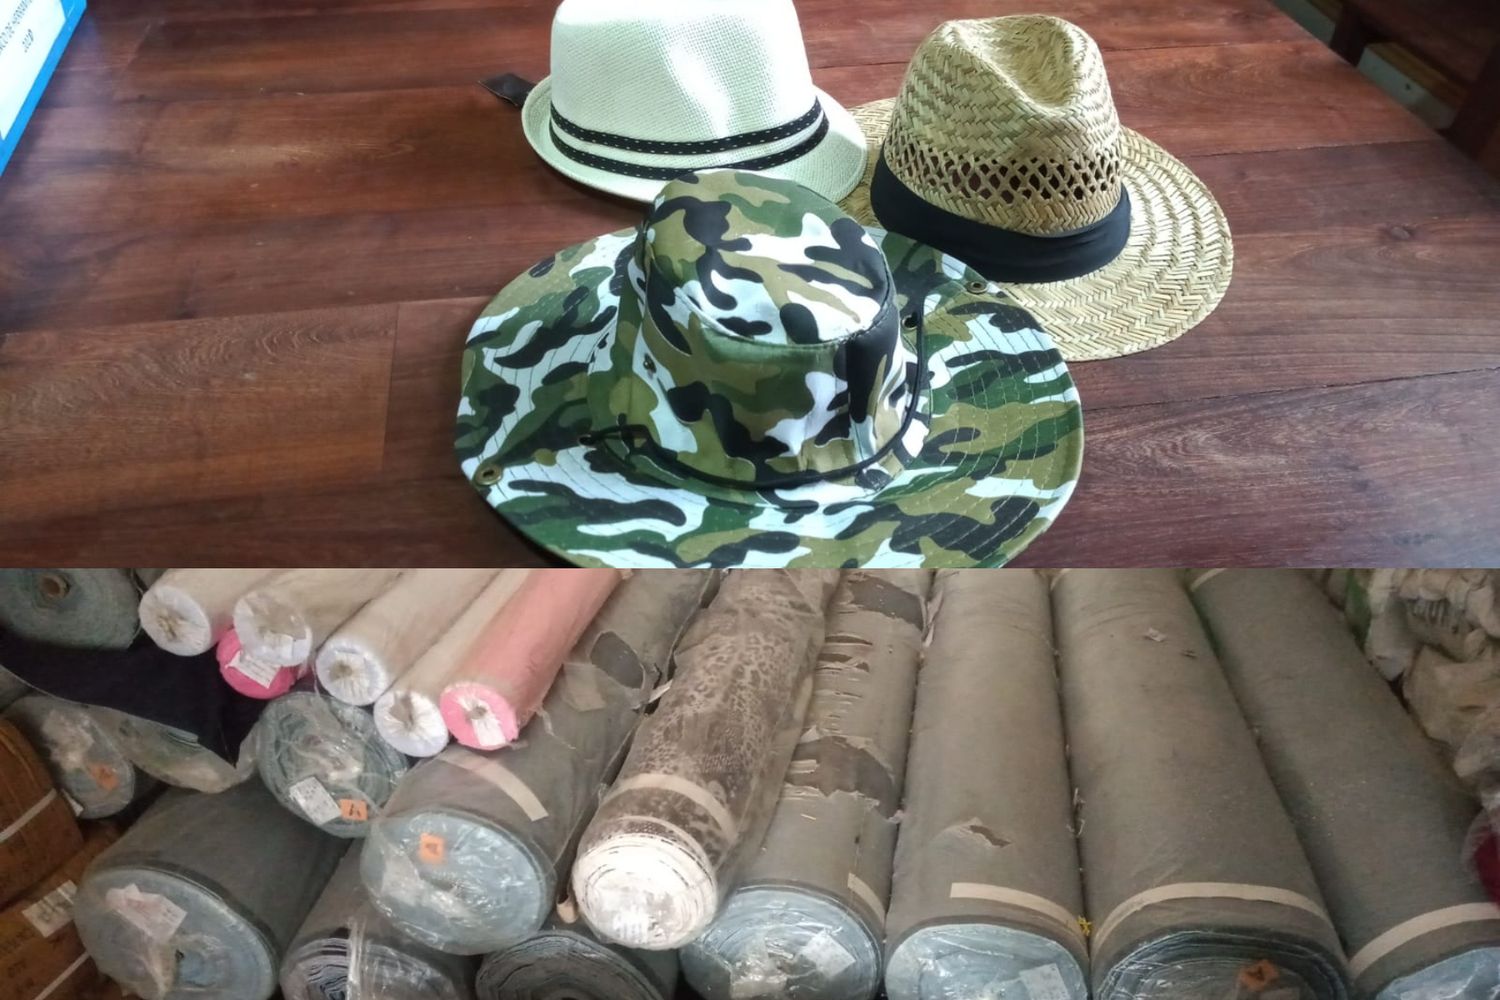 Sombreros y telas: un envío del Ministerio de Desarrollo Social tras decomiso de Aduana